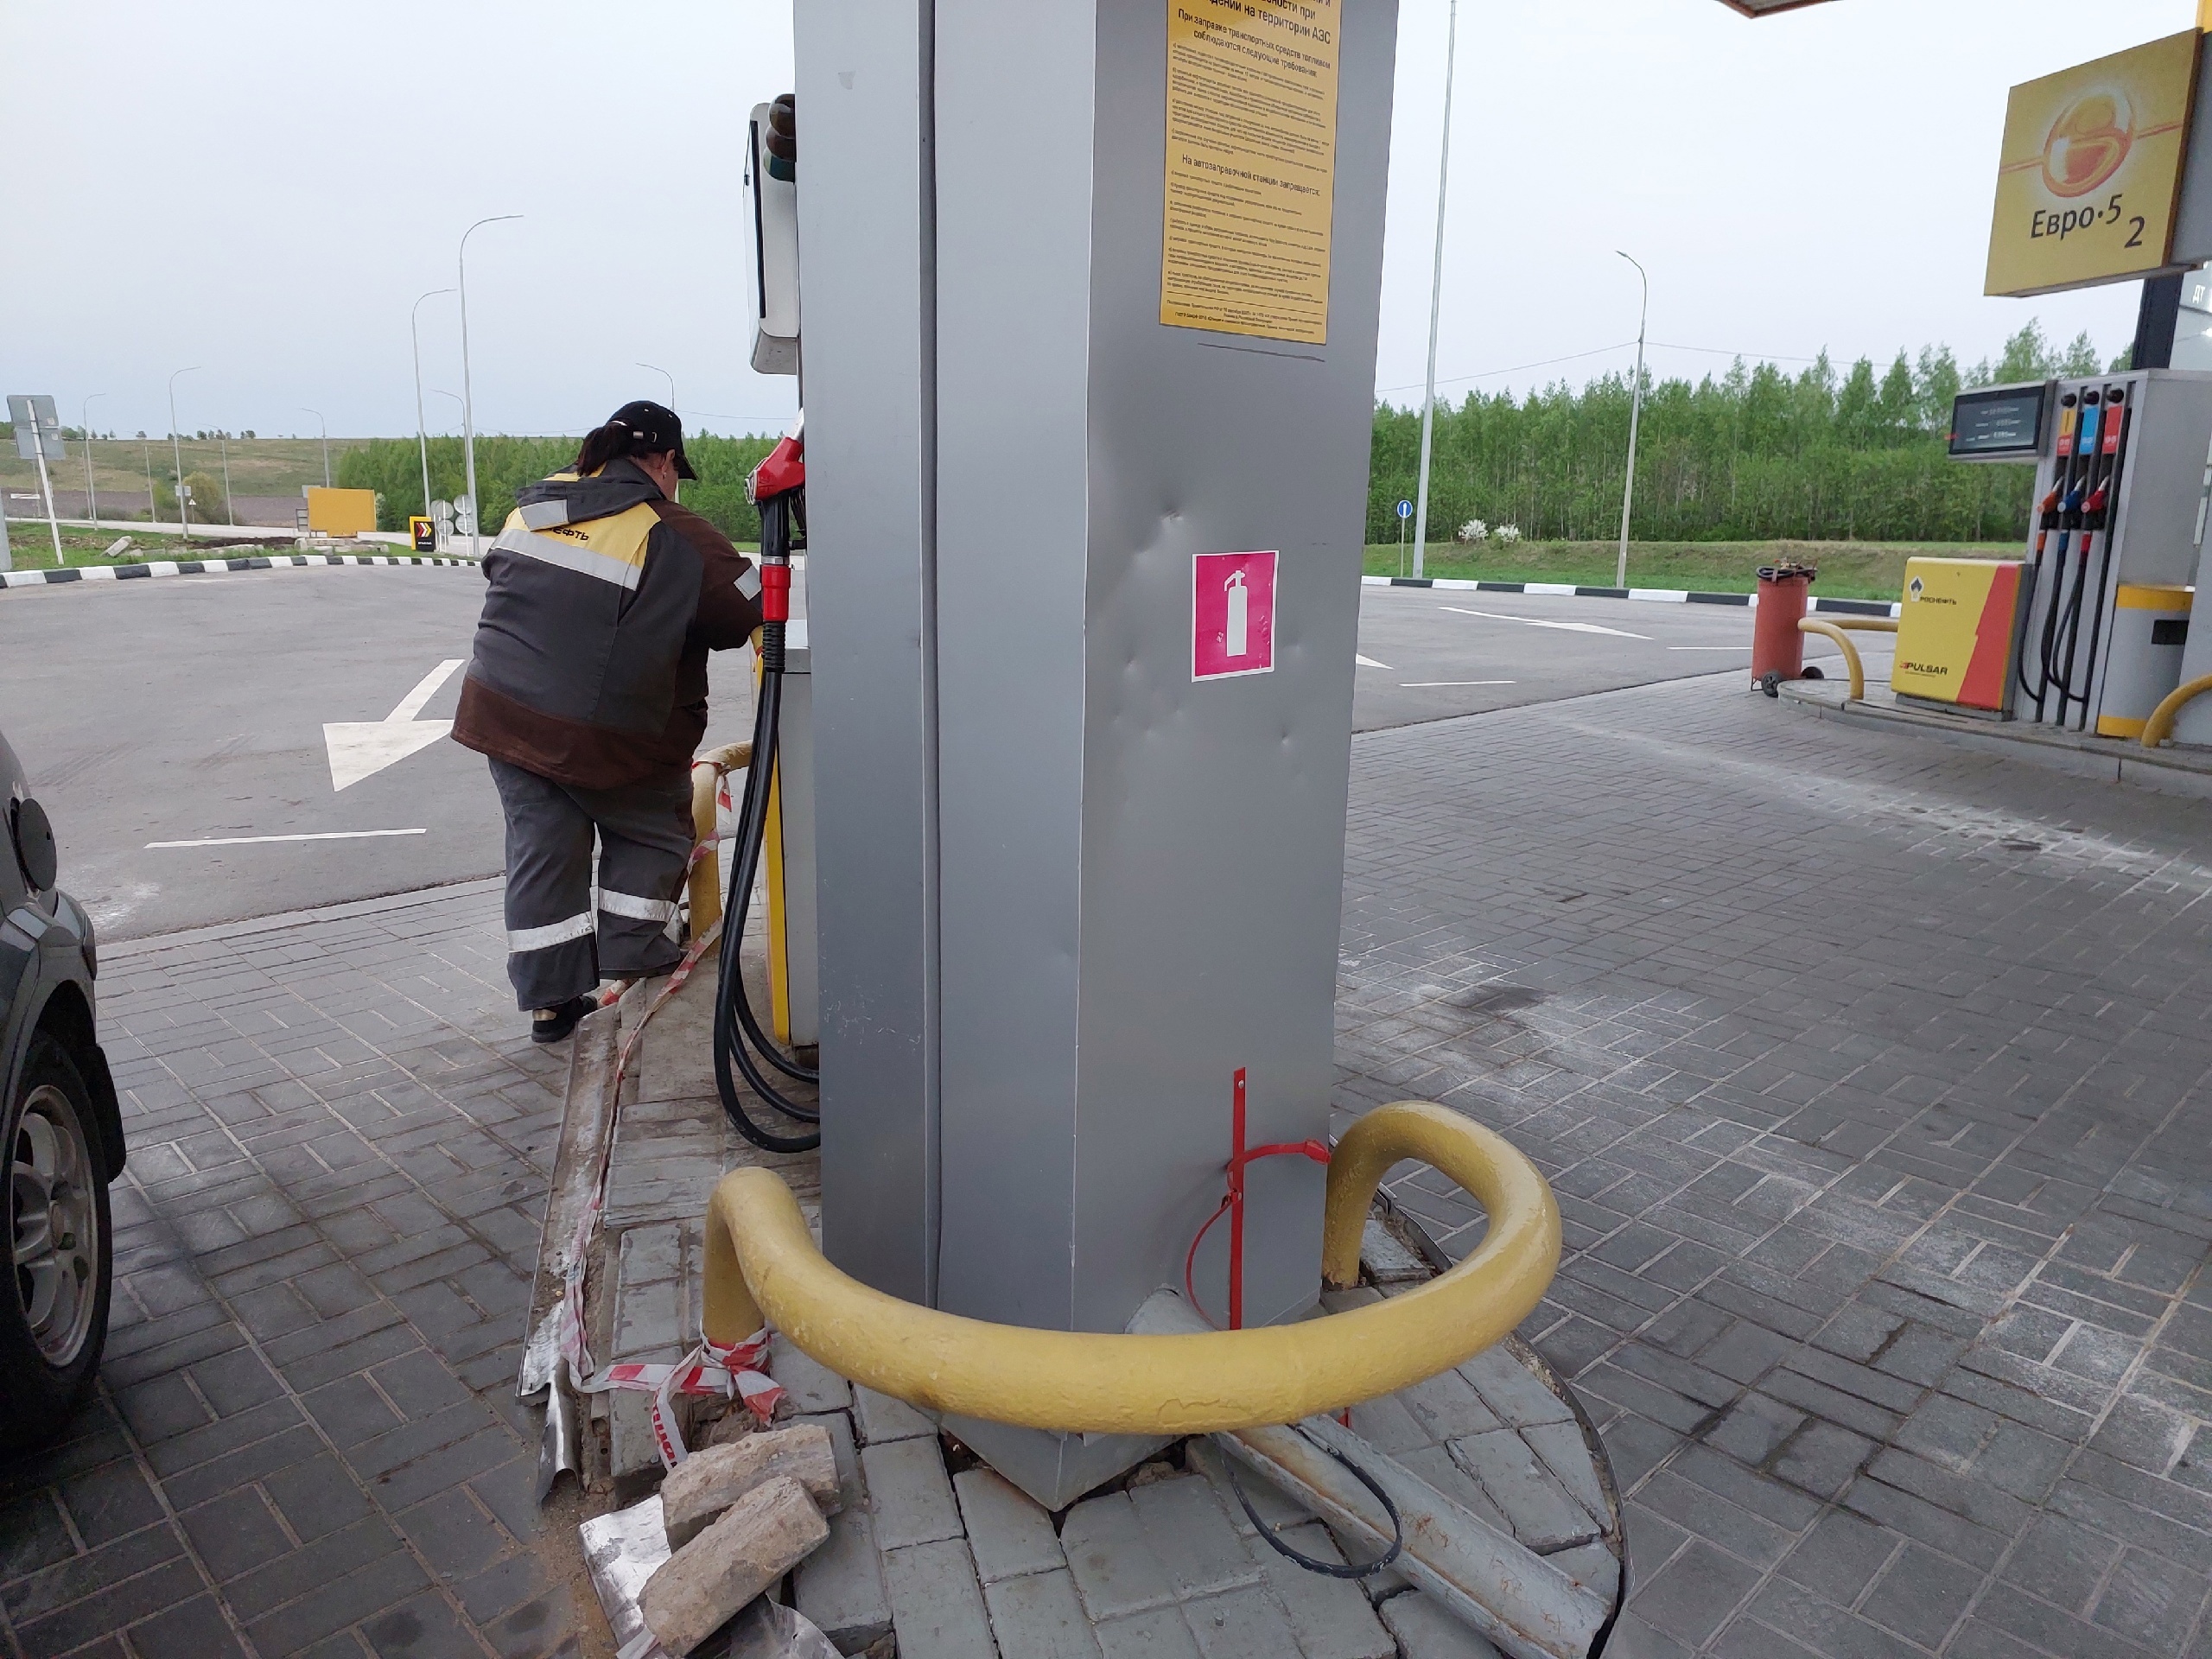 Власти назвали причины роста цен на бензин в Пензенской области